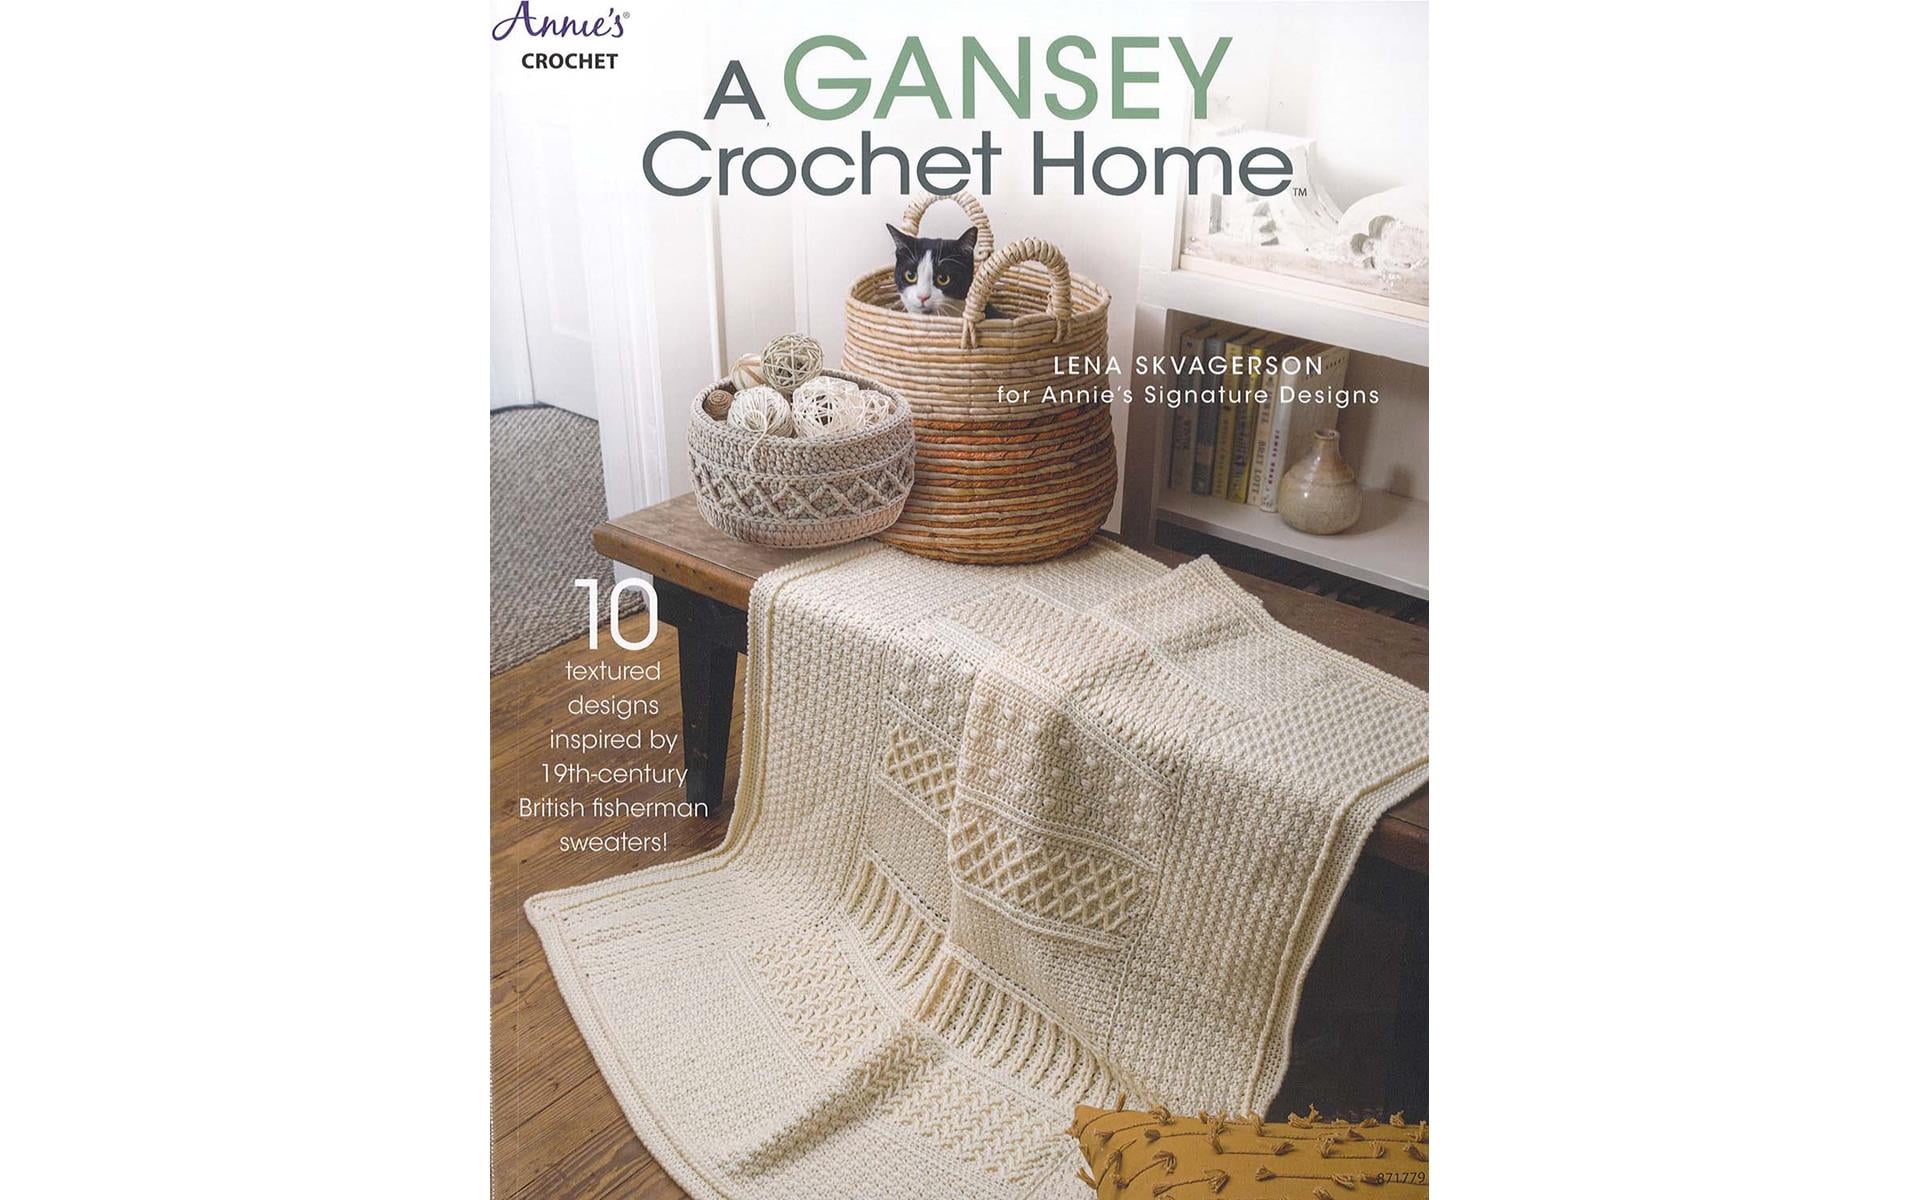 Annie's A Gansey Crochet Home Bk